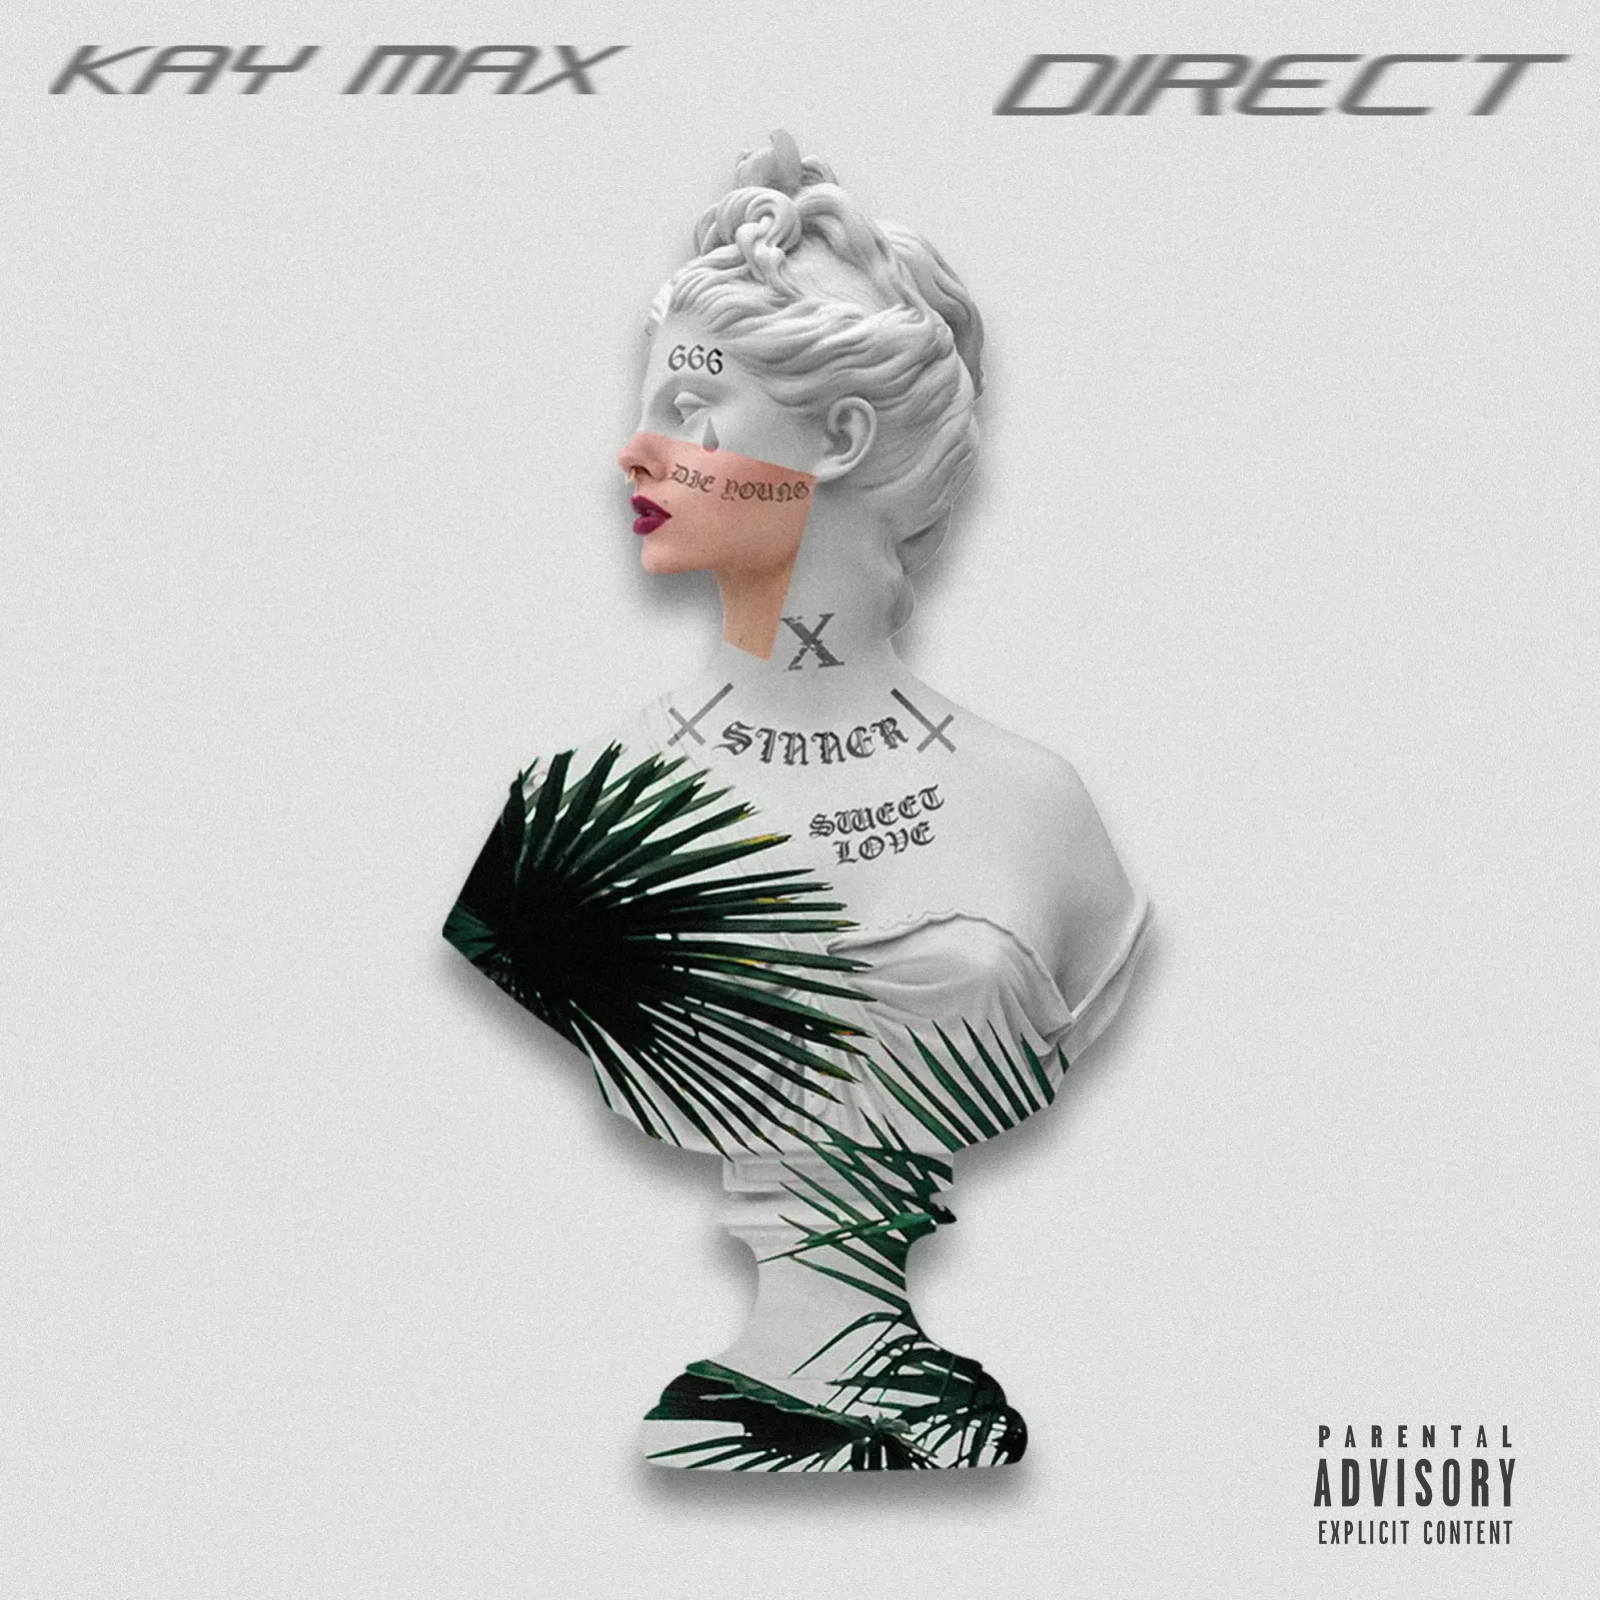 Direct - Kay Max